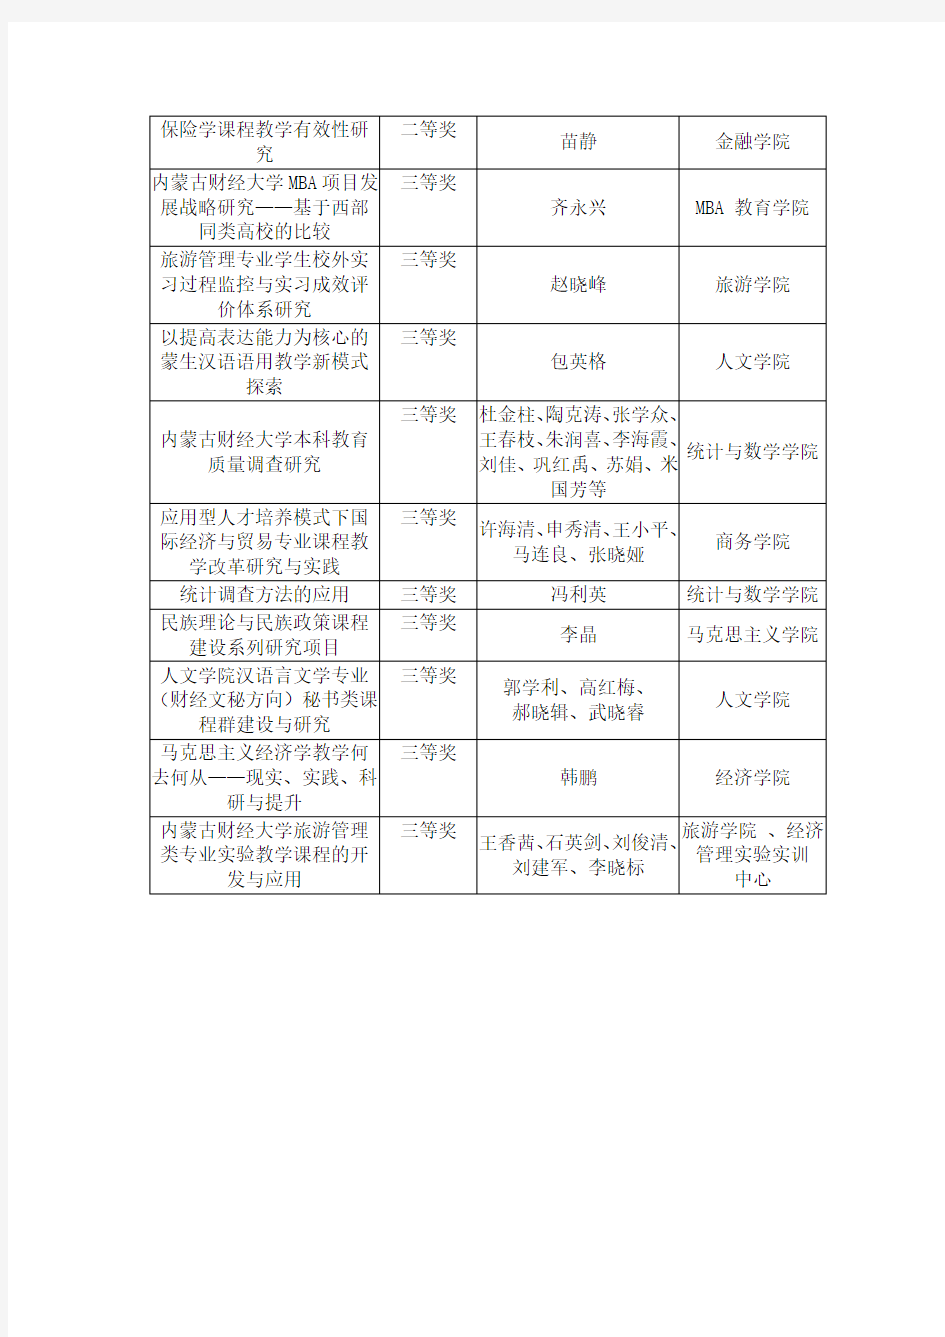 2013年内蒙古财经大学校级教学成果奖一览表